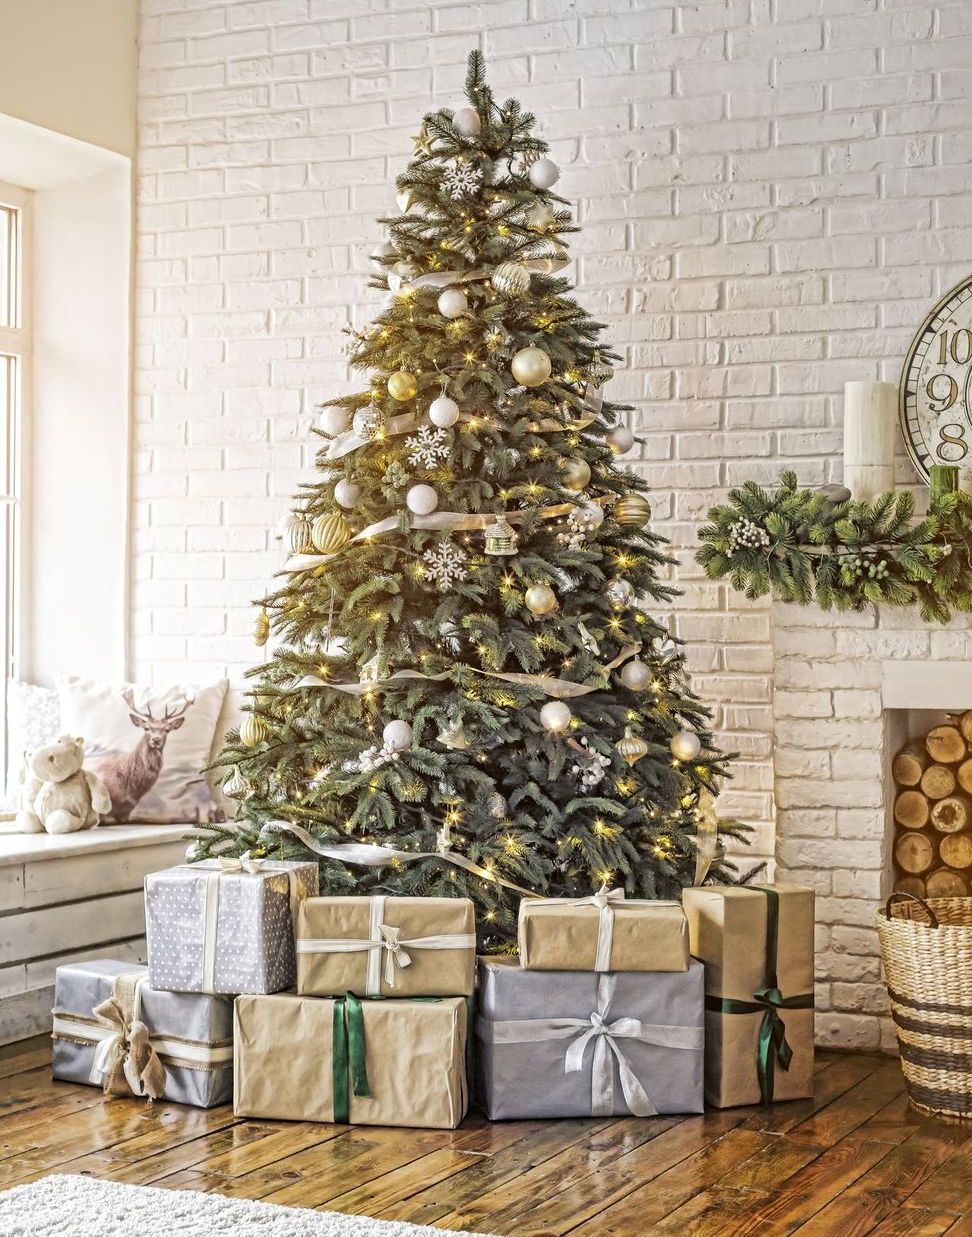 Inspiração: 10 espetaculares árvores de Natal - Conxita Maria - A